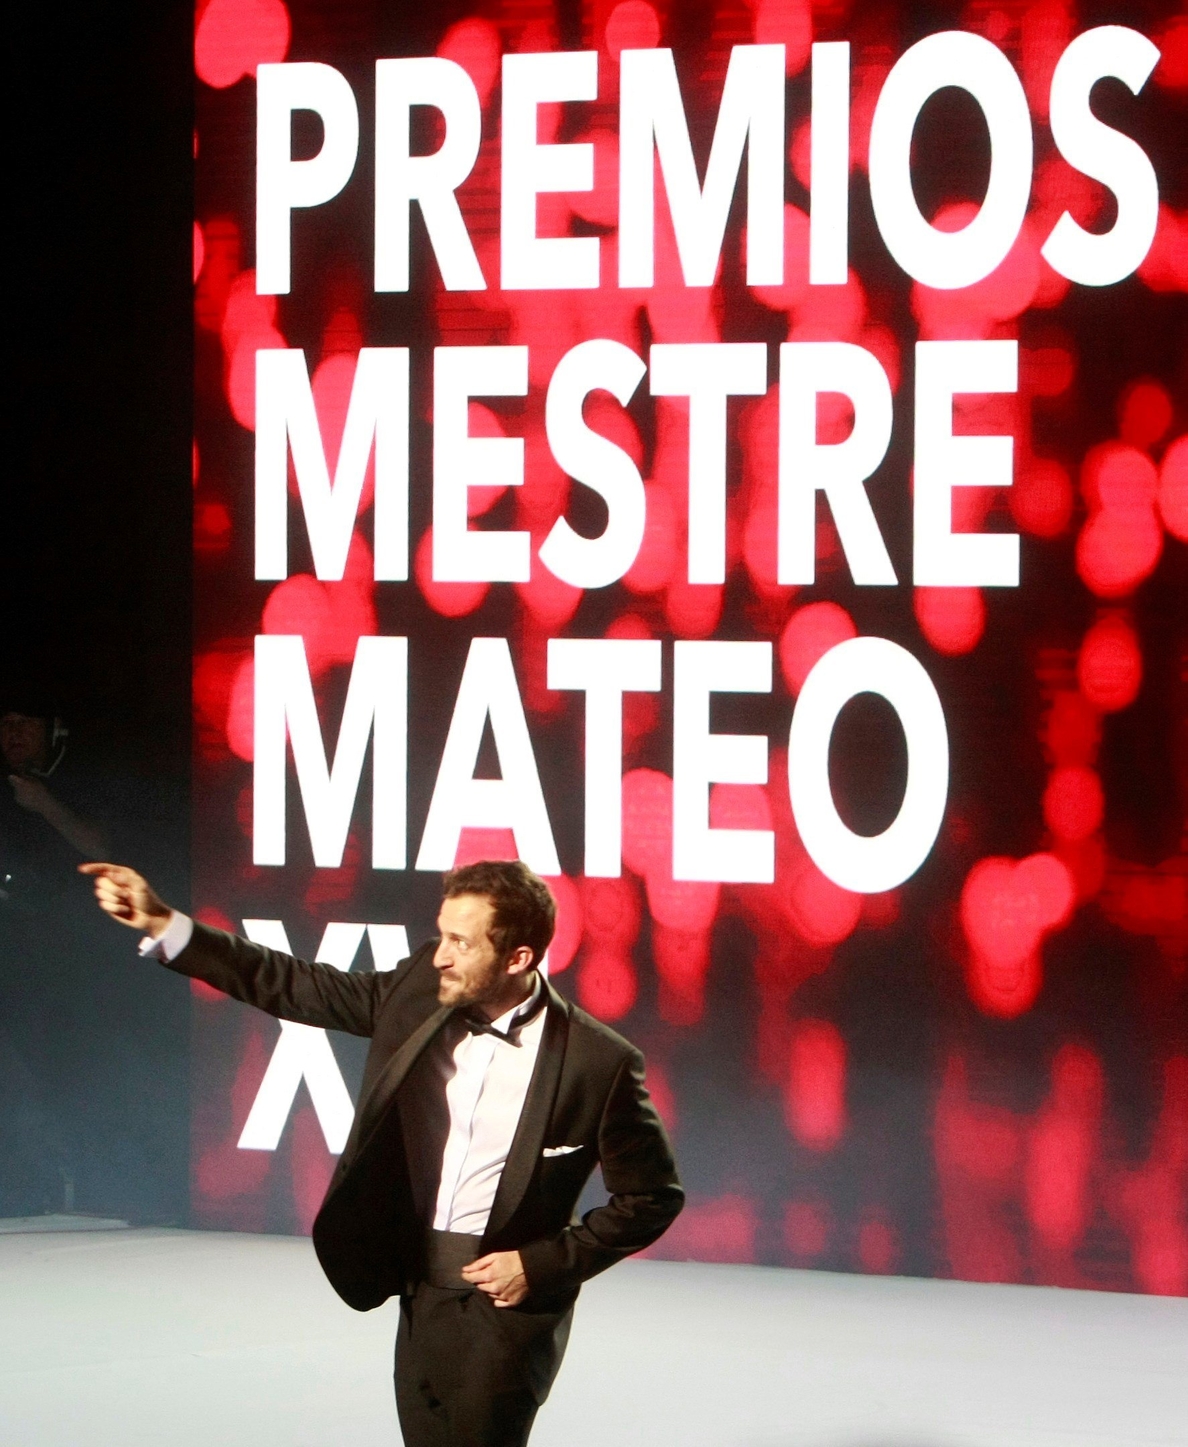 Dhogs arrasa en la gala del audiovisual gallego con 13 premios Mestre Mateo